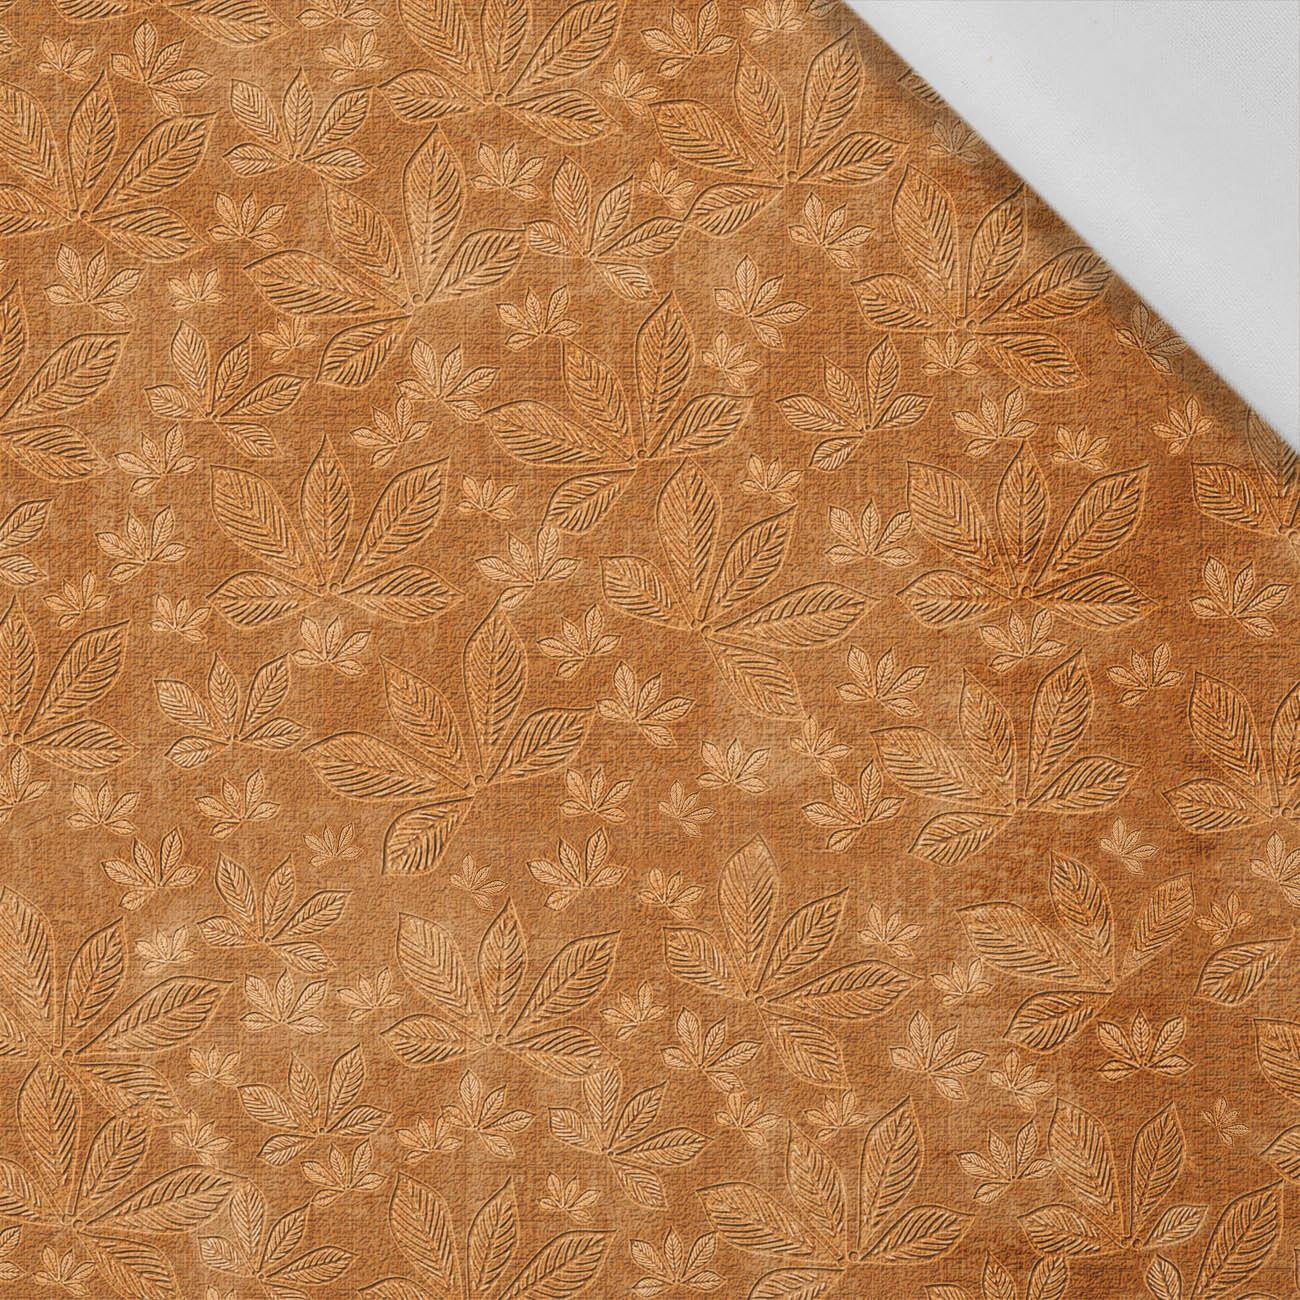 40cm CHESTNUT LEAVES Ms.2 / orange (AUTUMN COLORS) - Cotton woven fabric